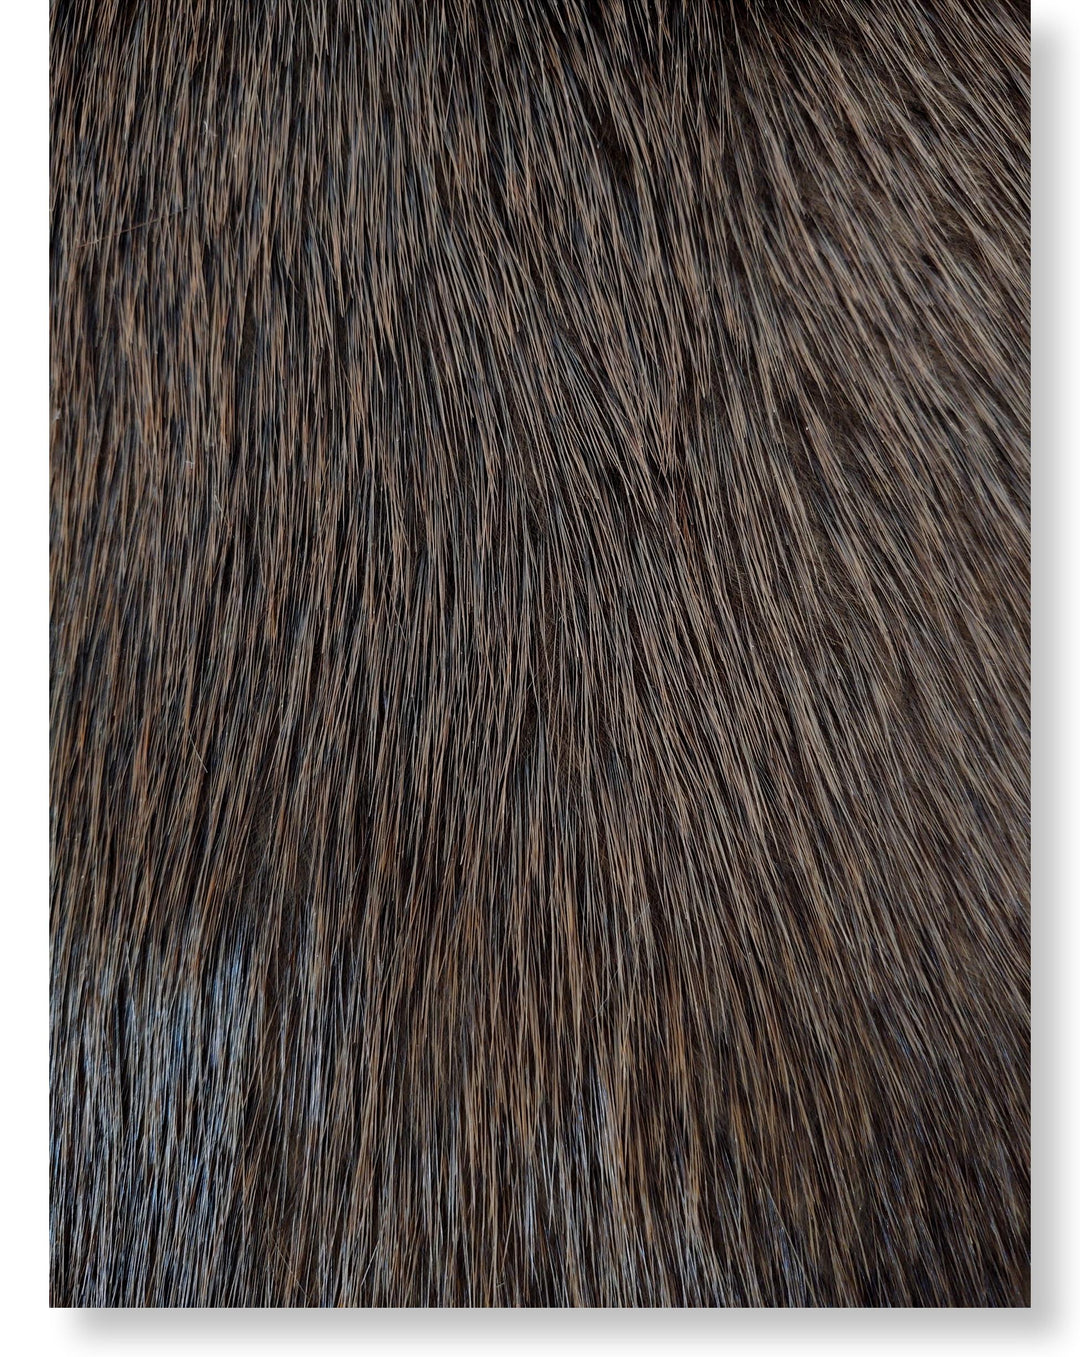 Beaver Brown - Klädd pälsskinn - Päls